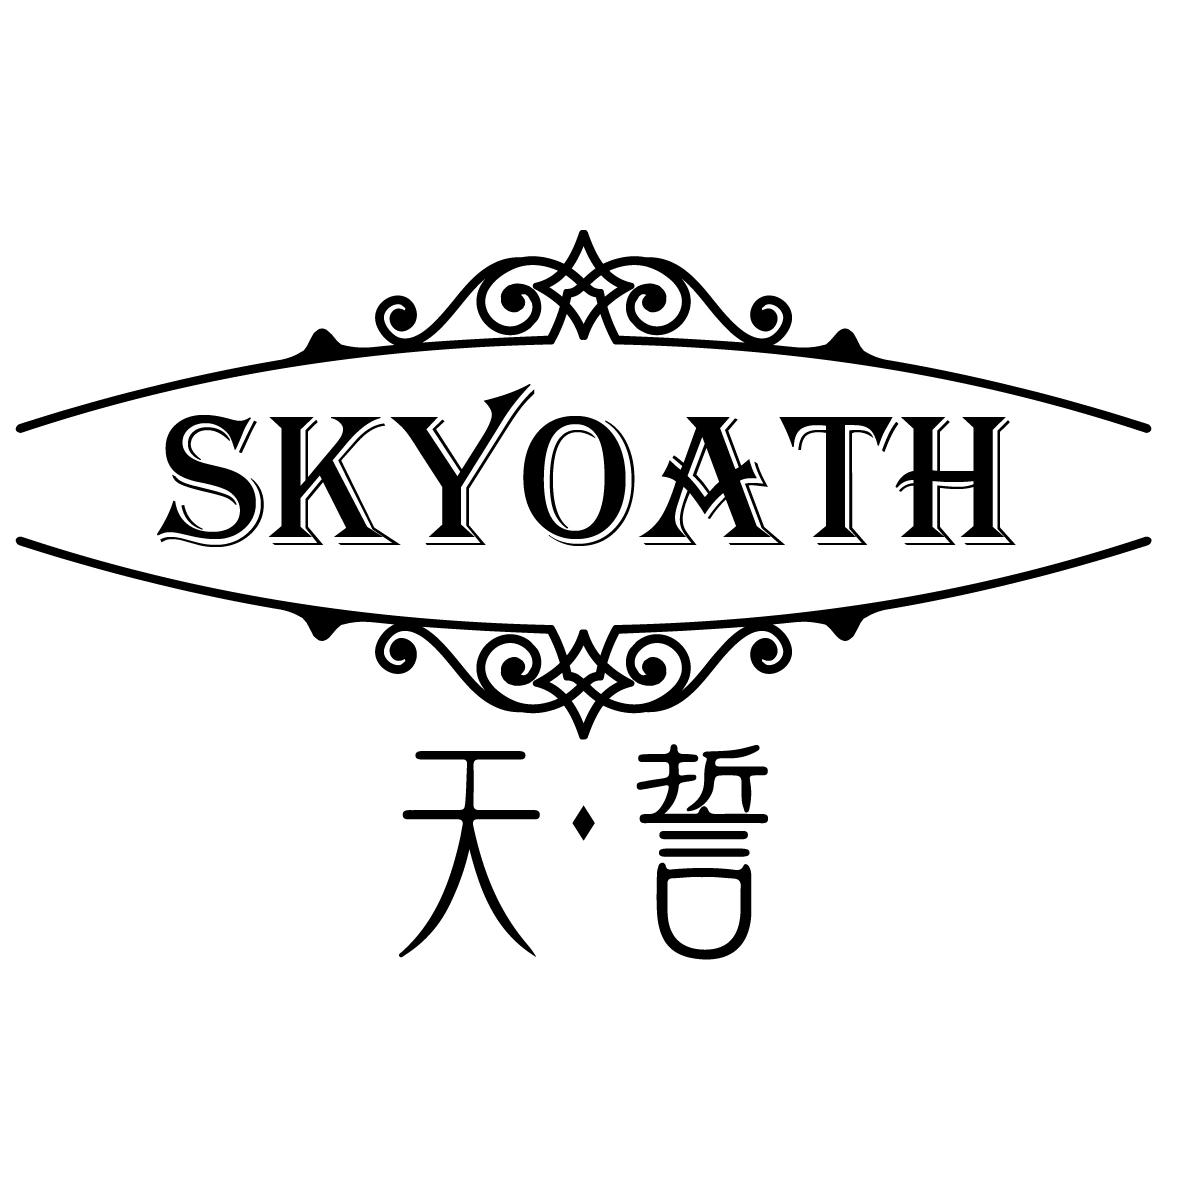  SKYOATH